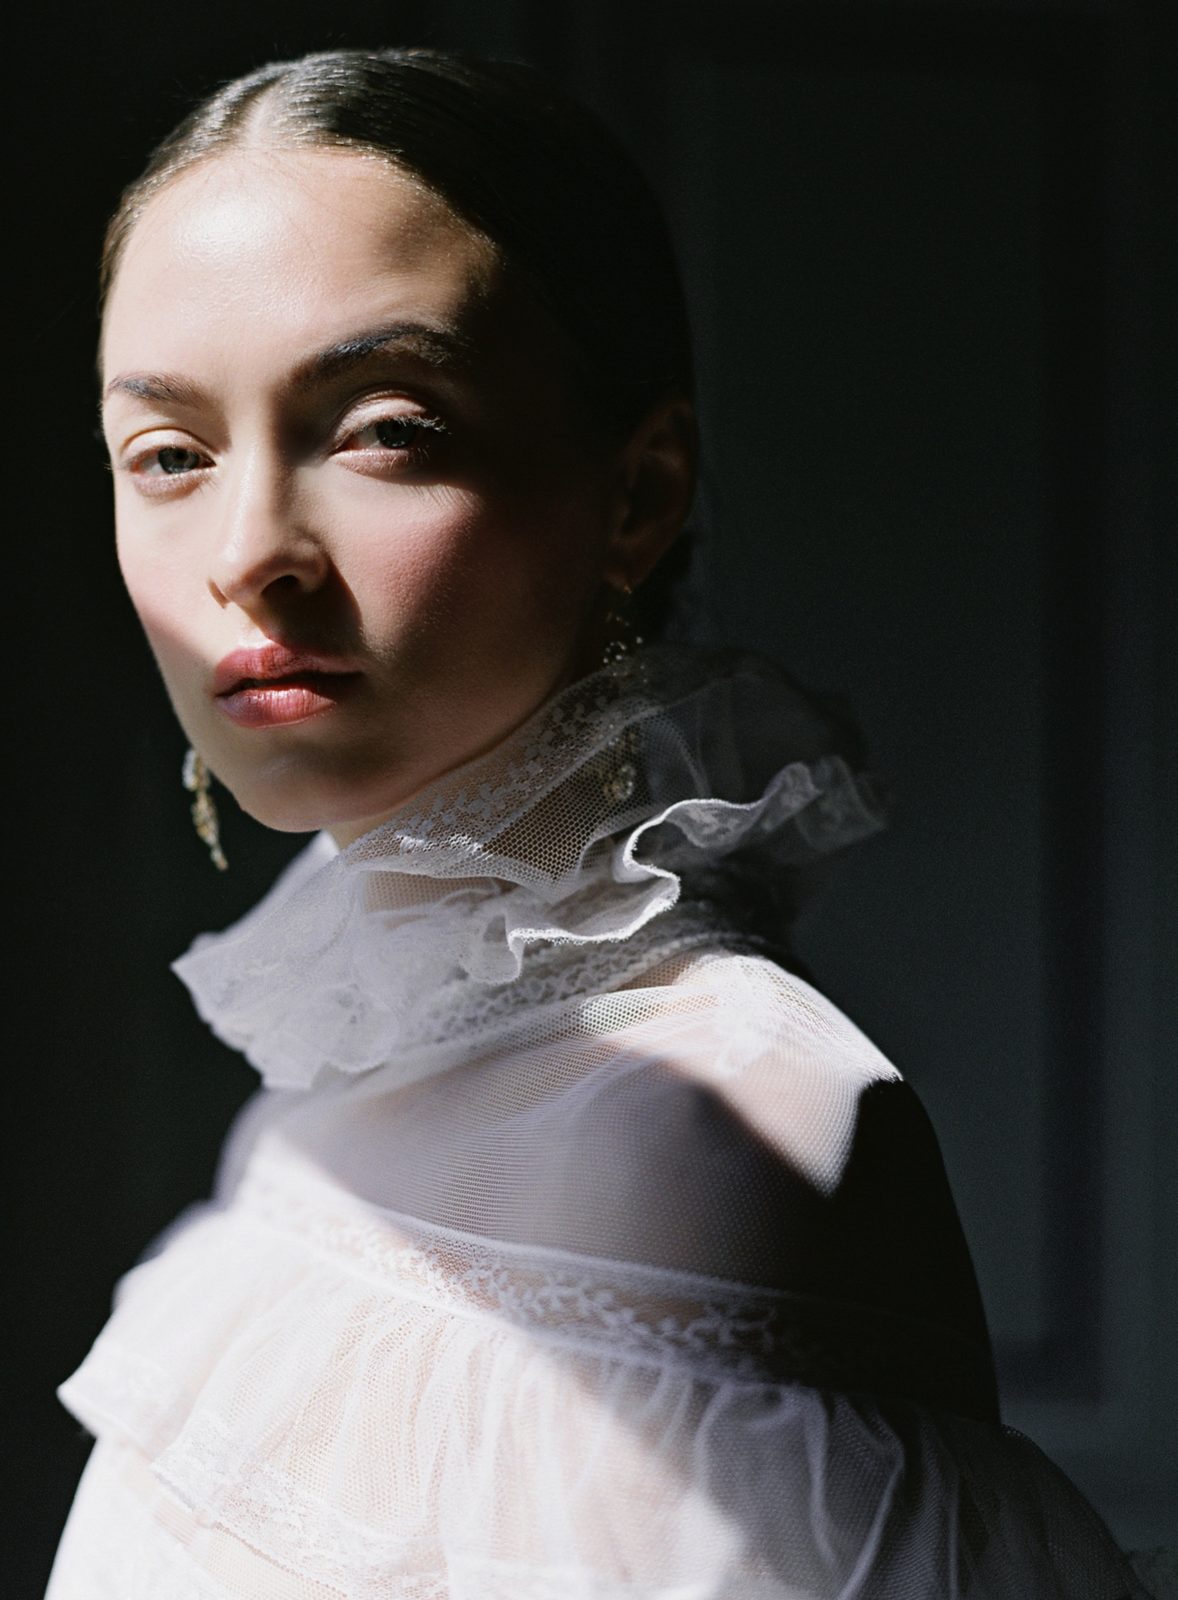 F/W 2020 Haute Couture Bridal Fashion Campaign | Laura Gordon Fine Art ...